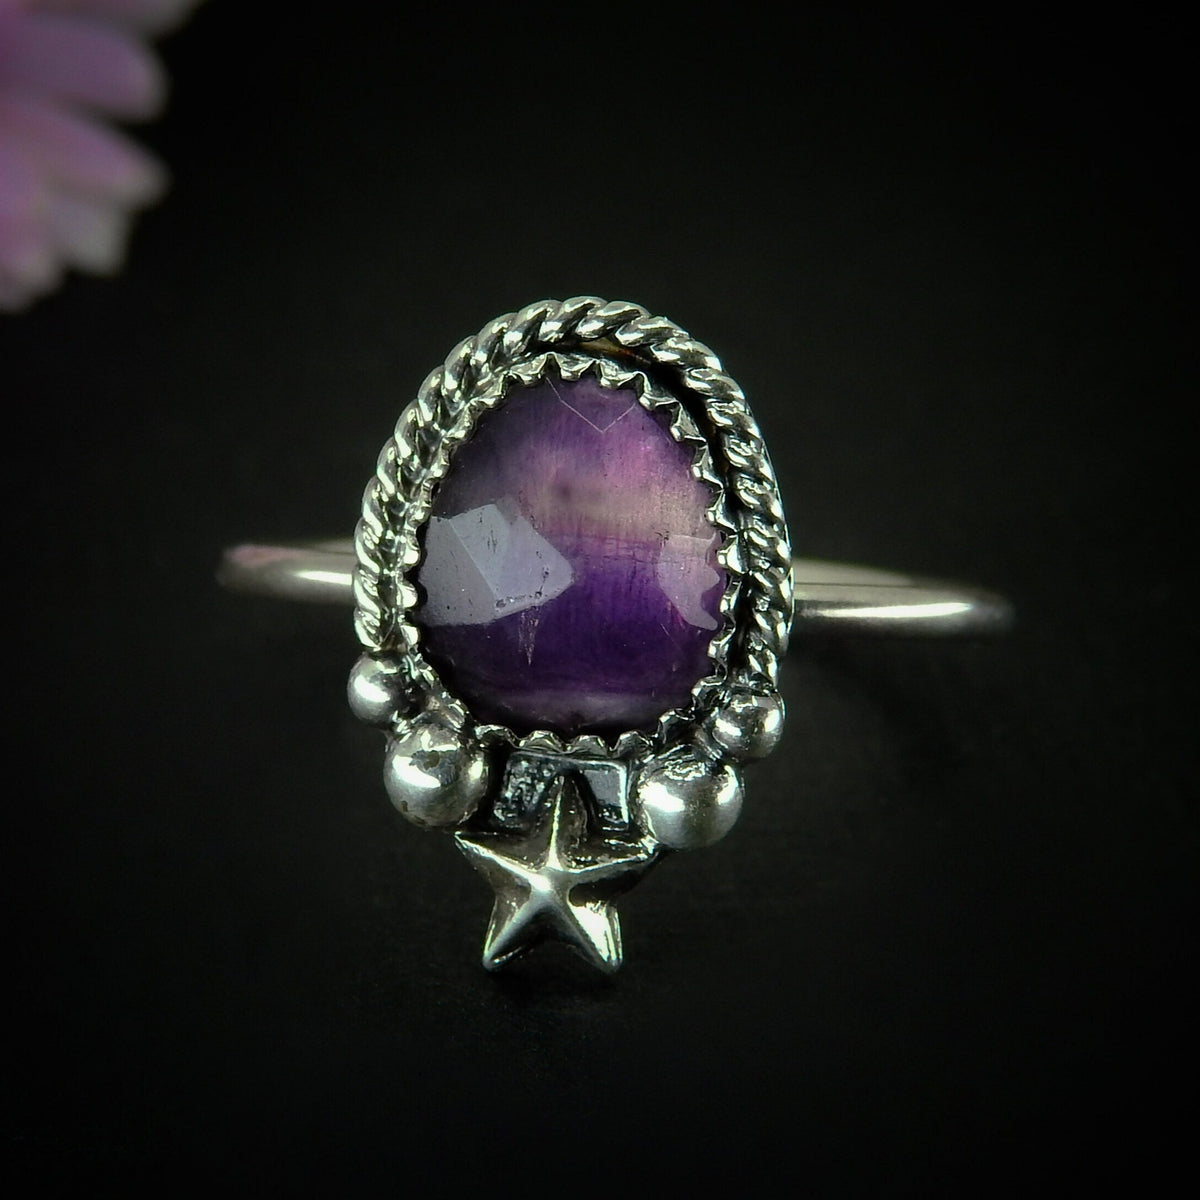 Rose Cut Fluorite Ring - Size 10 to 10 1/4 - Sterling Silver - Faceted Fluorite Jewelry - Purple Fluorite Star Ring - OOAK Dainty Flurorite